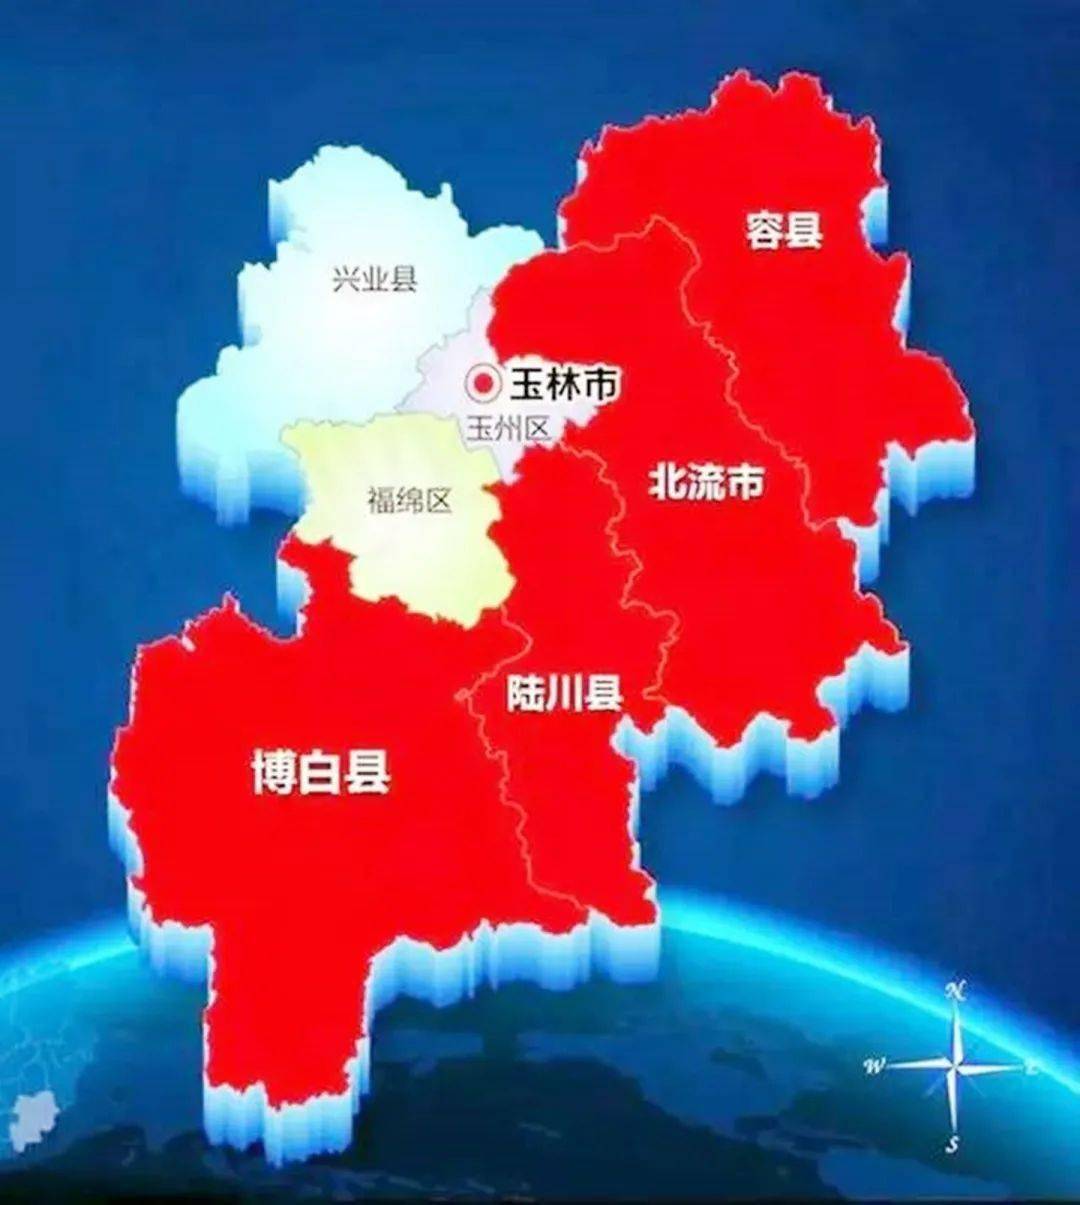 兴业县各镇分布图图片